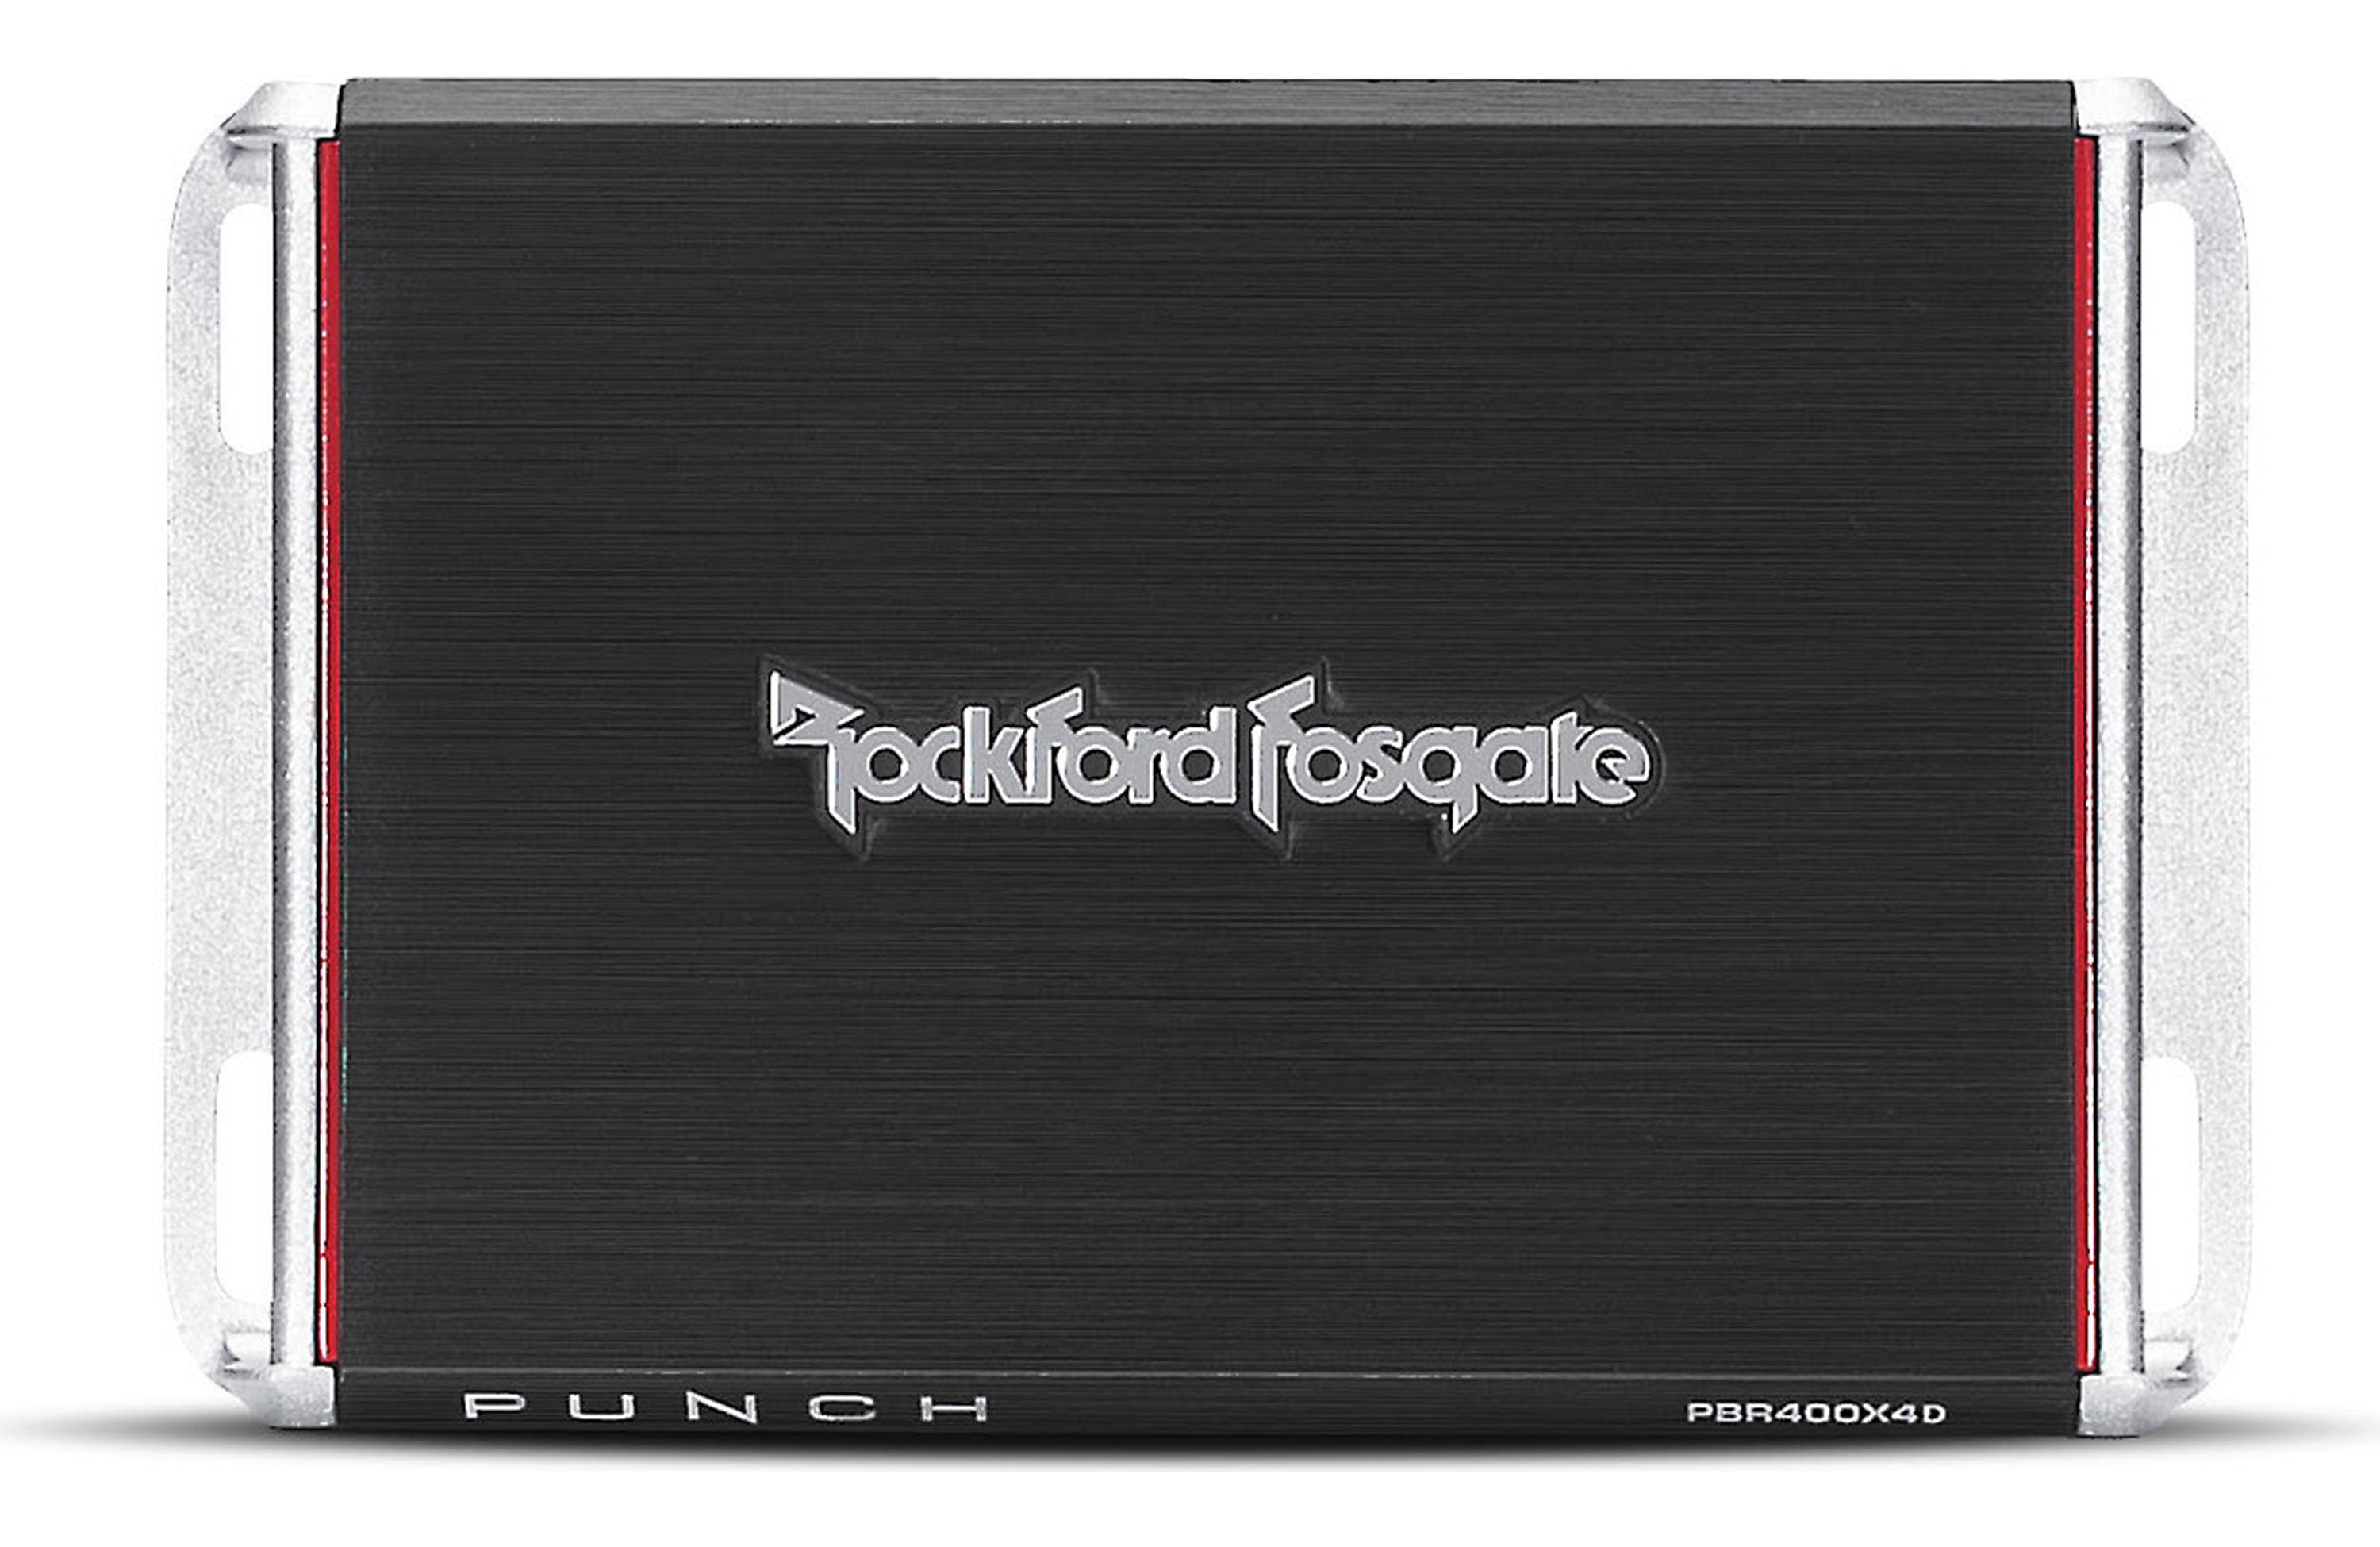 Rockford Fosgate Punch 400 Watt Full-Range 4-Channel Amplifier pn pbr400x4d